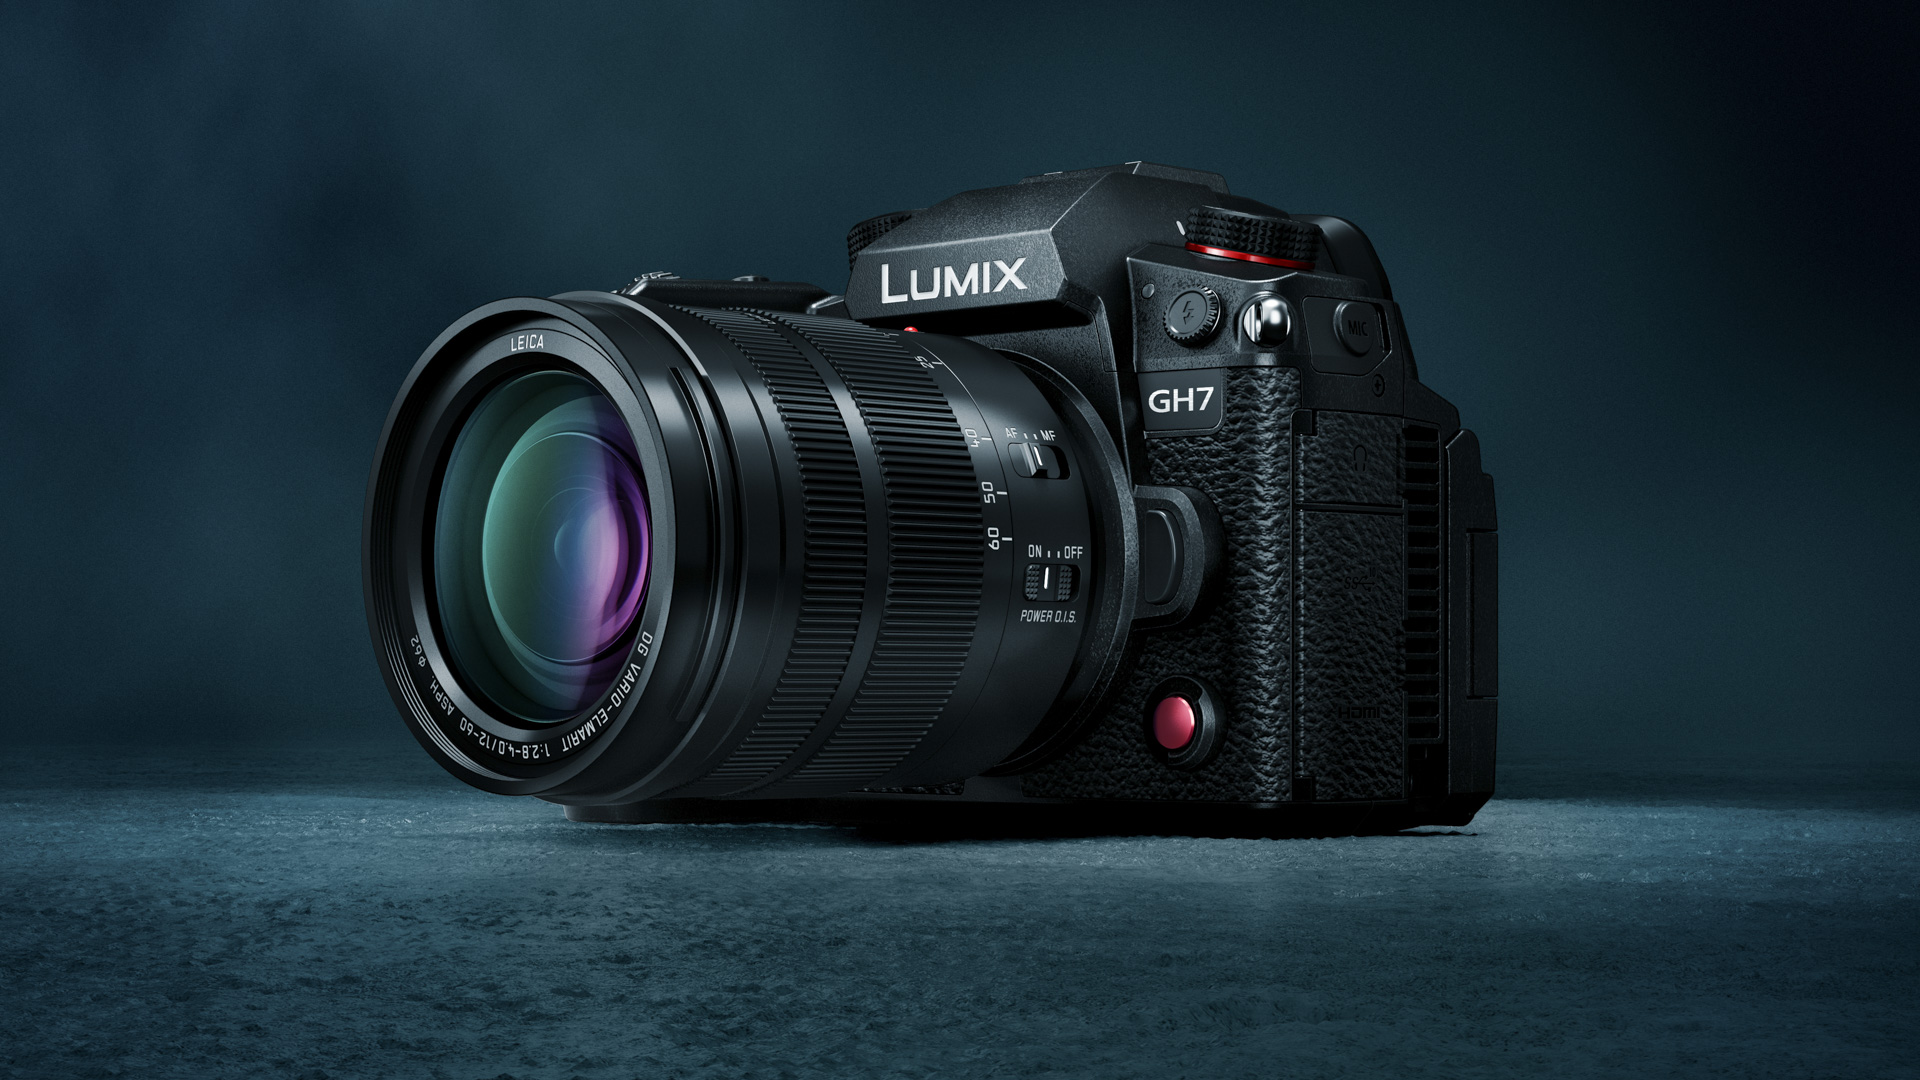 Cámara Panasonic Lumix GH7 con lente Leica 12-60 mm montada sobre un fondo azul oscuro